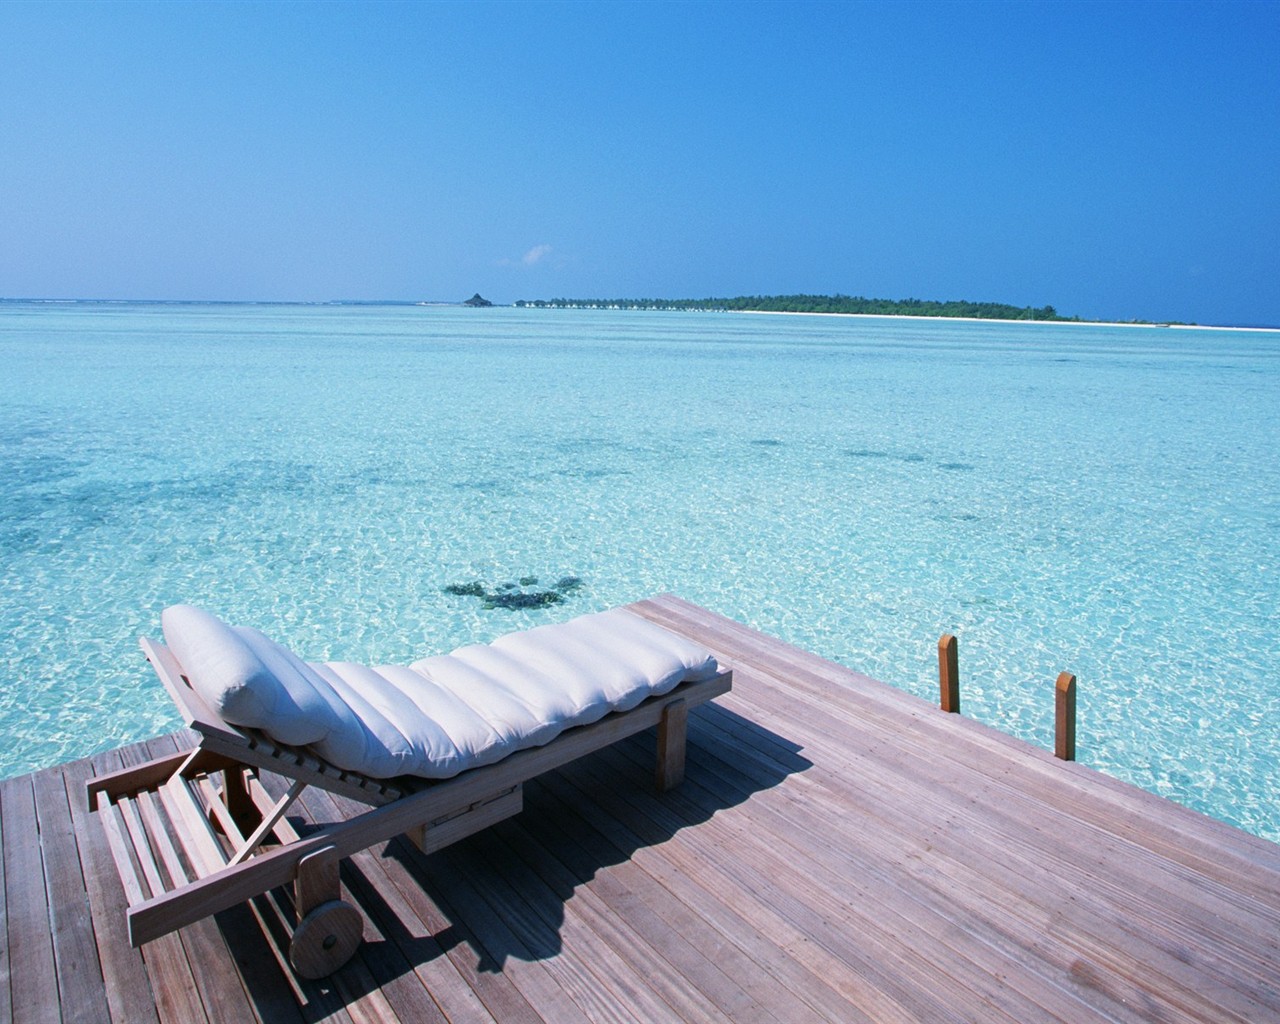 Maledivy vody a modrou oblohu #13 - 1280x1024